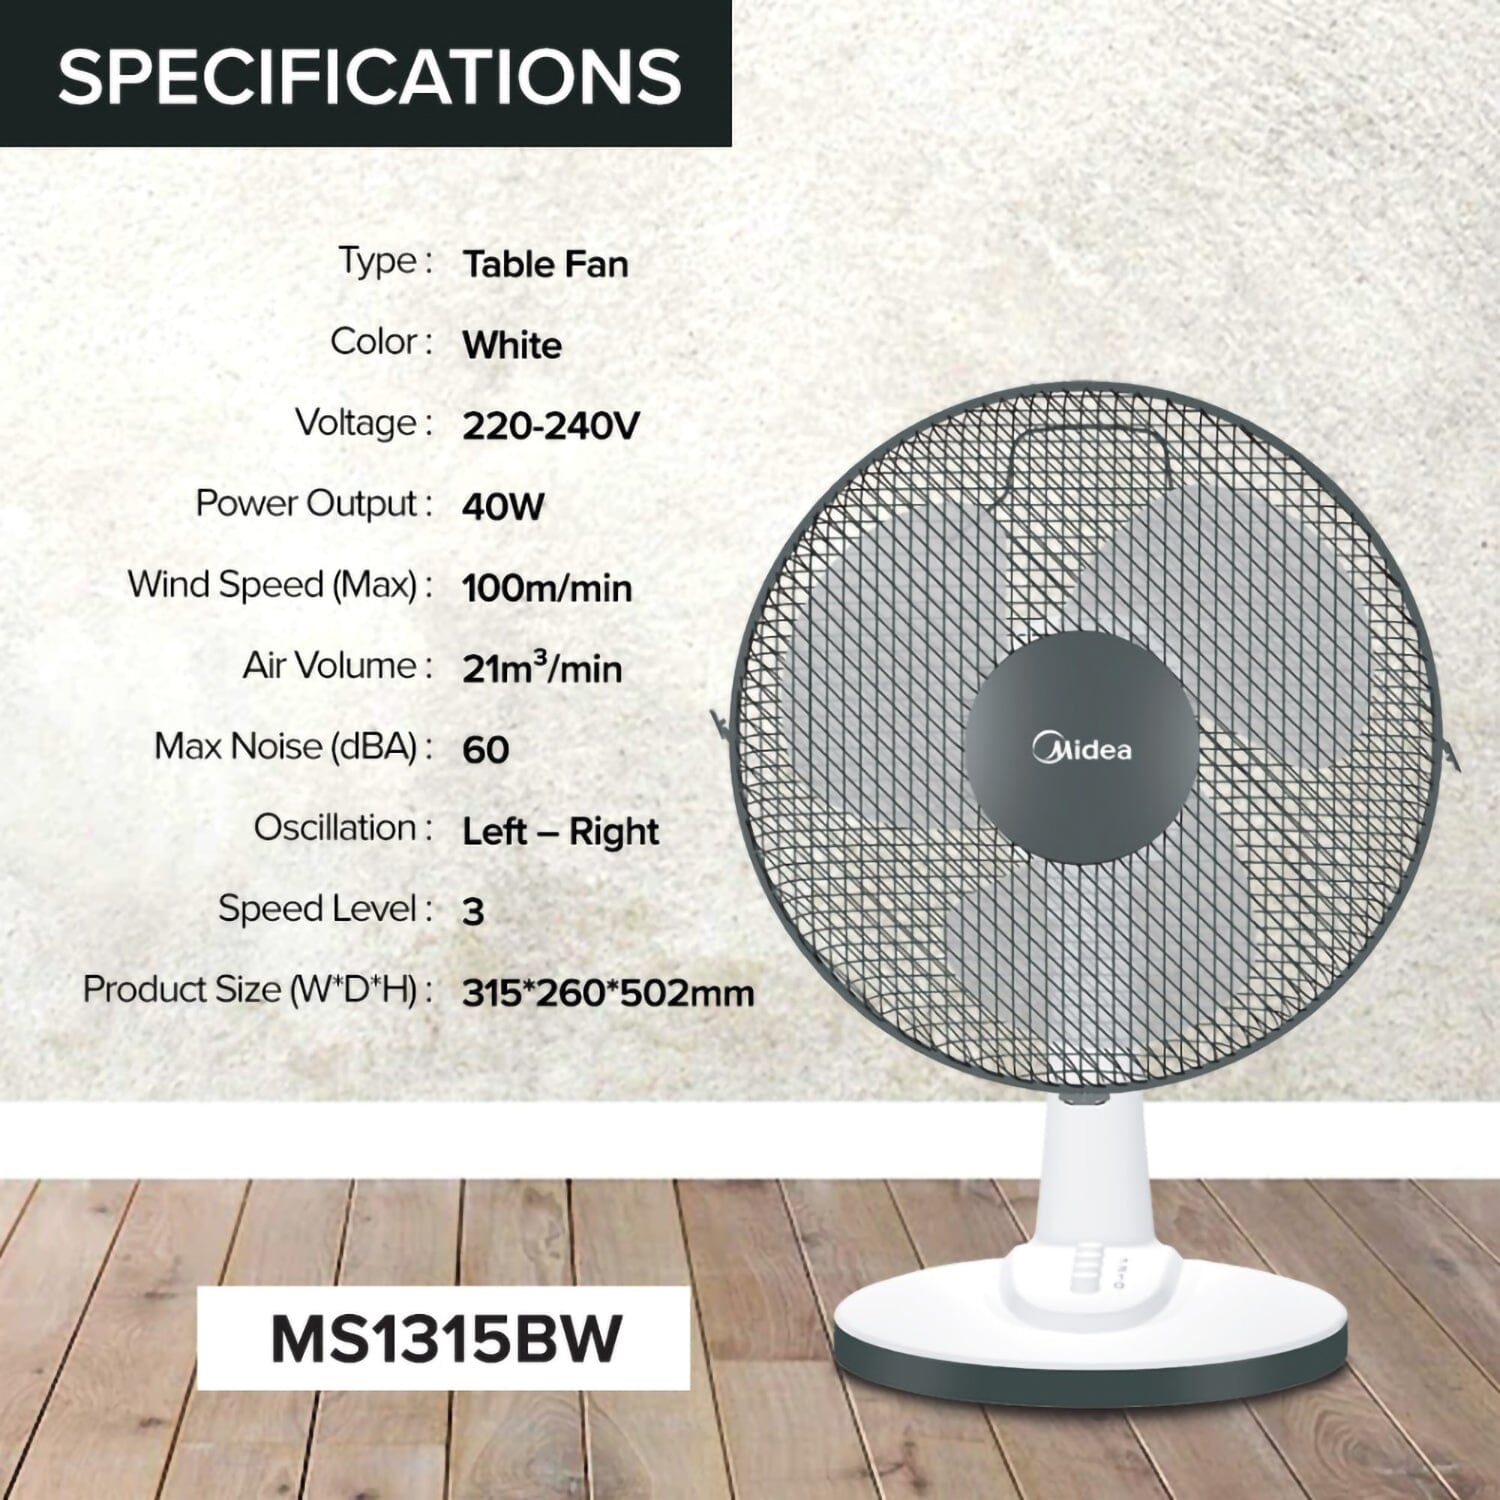 Midea 12 Inches MS1315BW Table Fan Fan Toshiba 